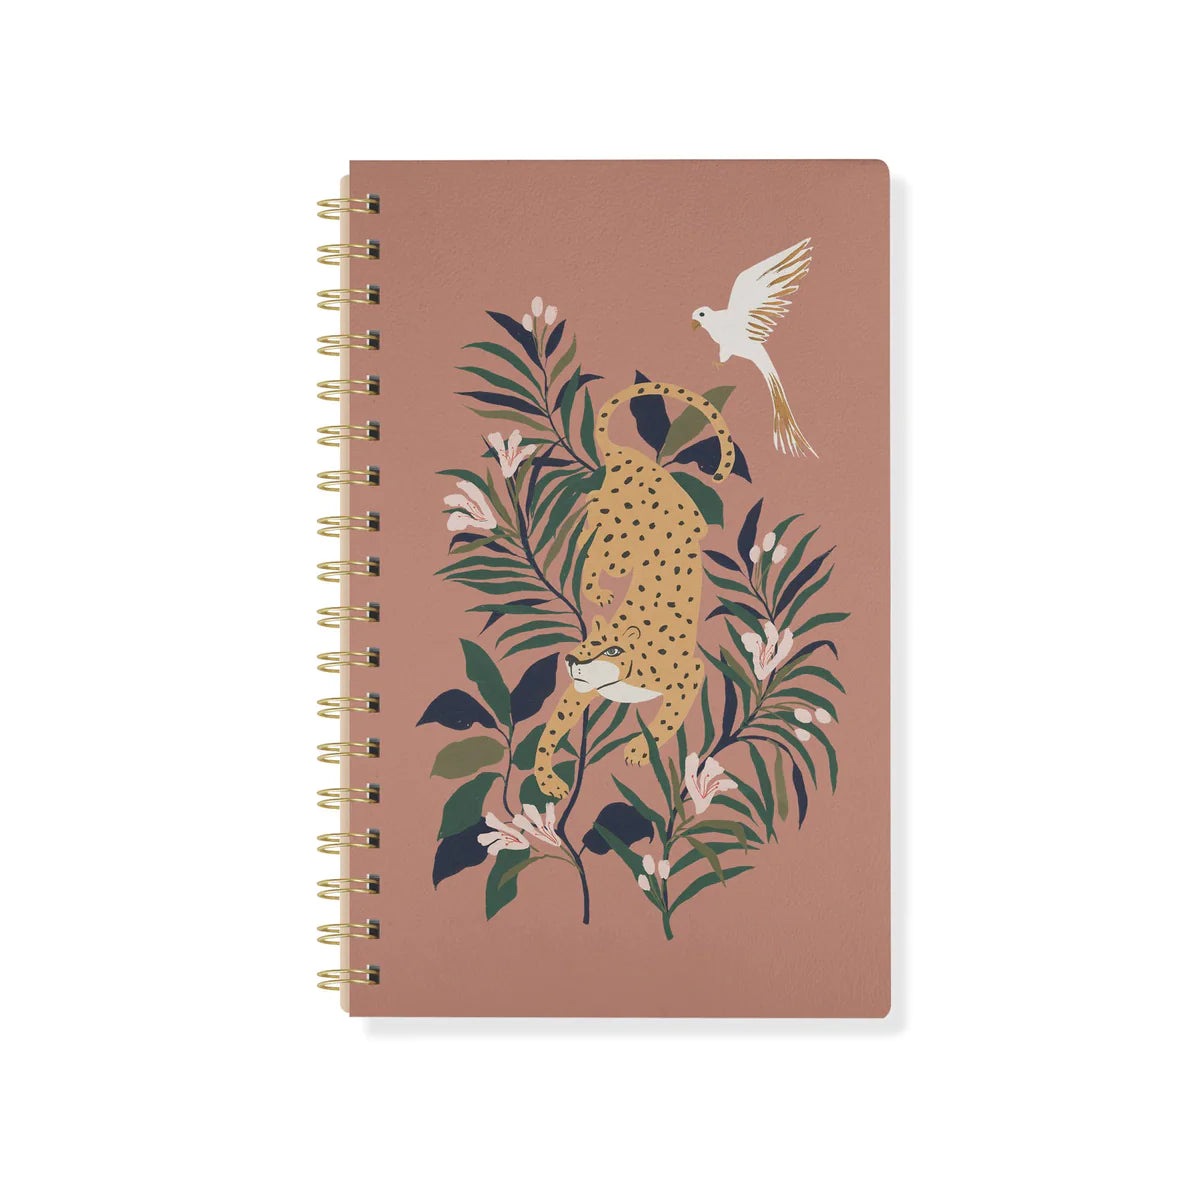 Cheetah Spiral Journal Notebooks + Journals